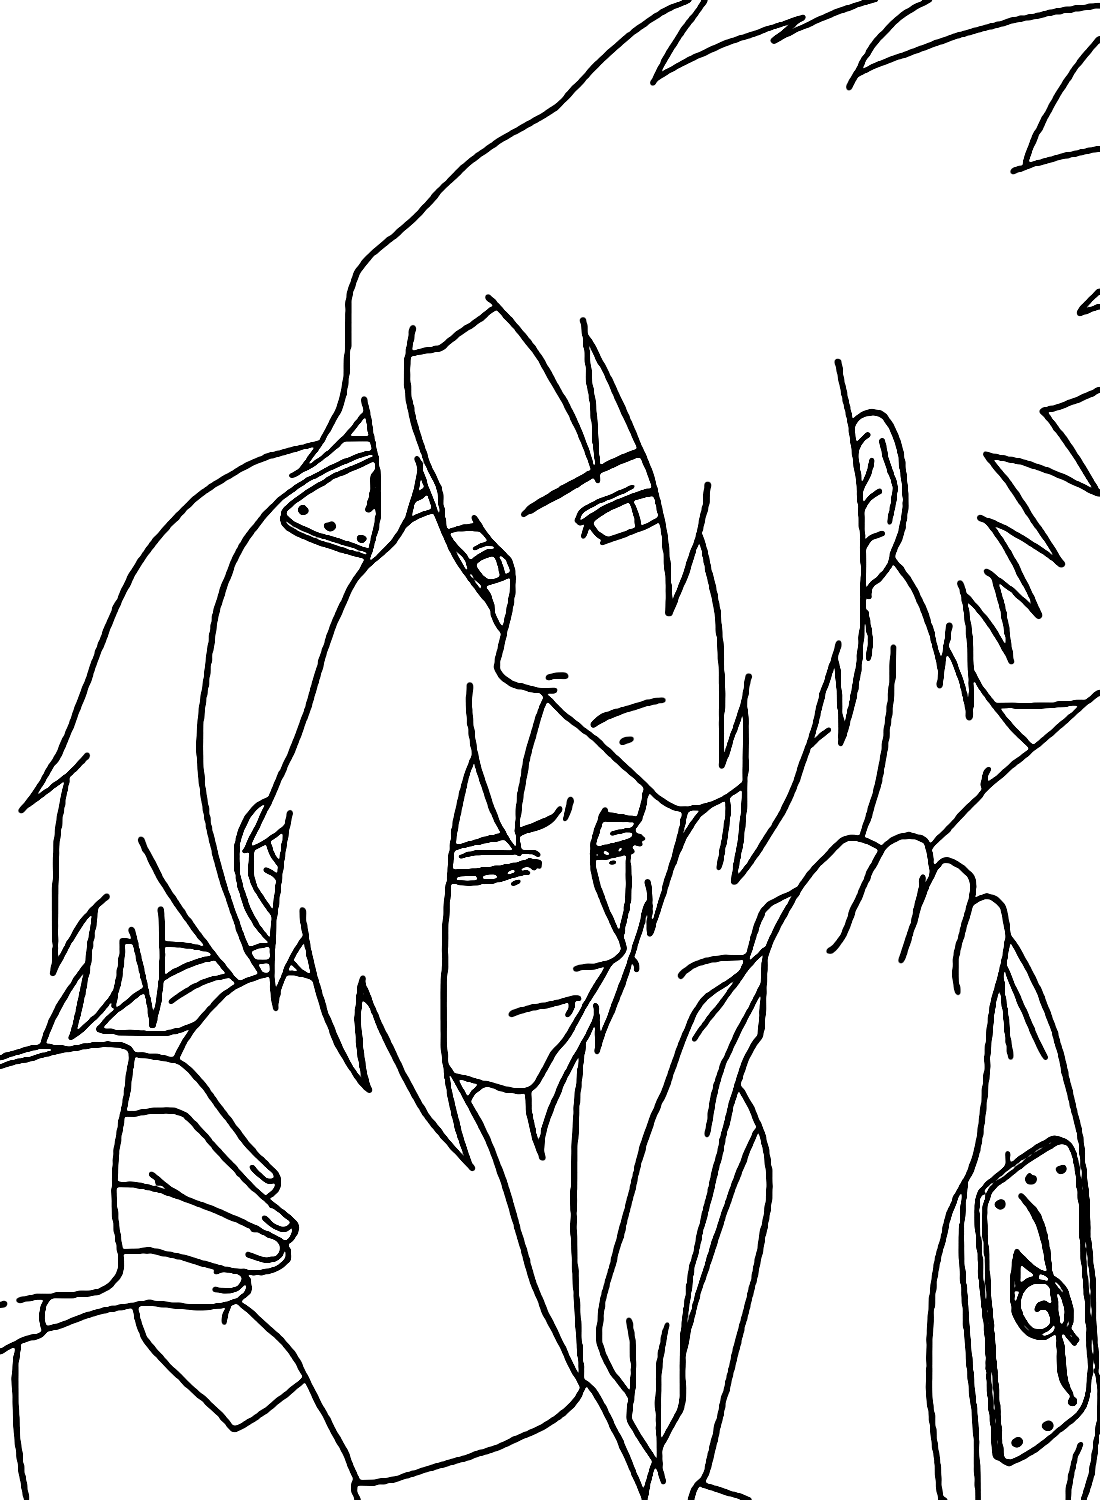 Sasuke hugs Sakura Coloring Pages from Sasuke